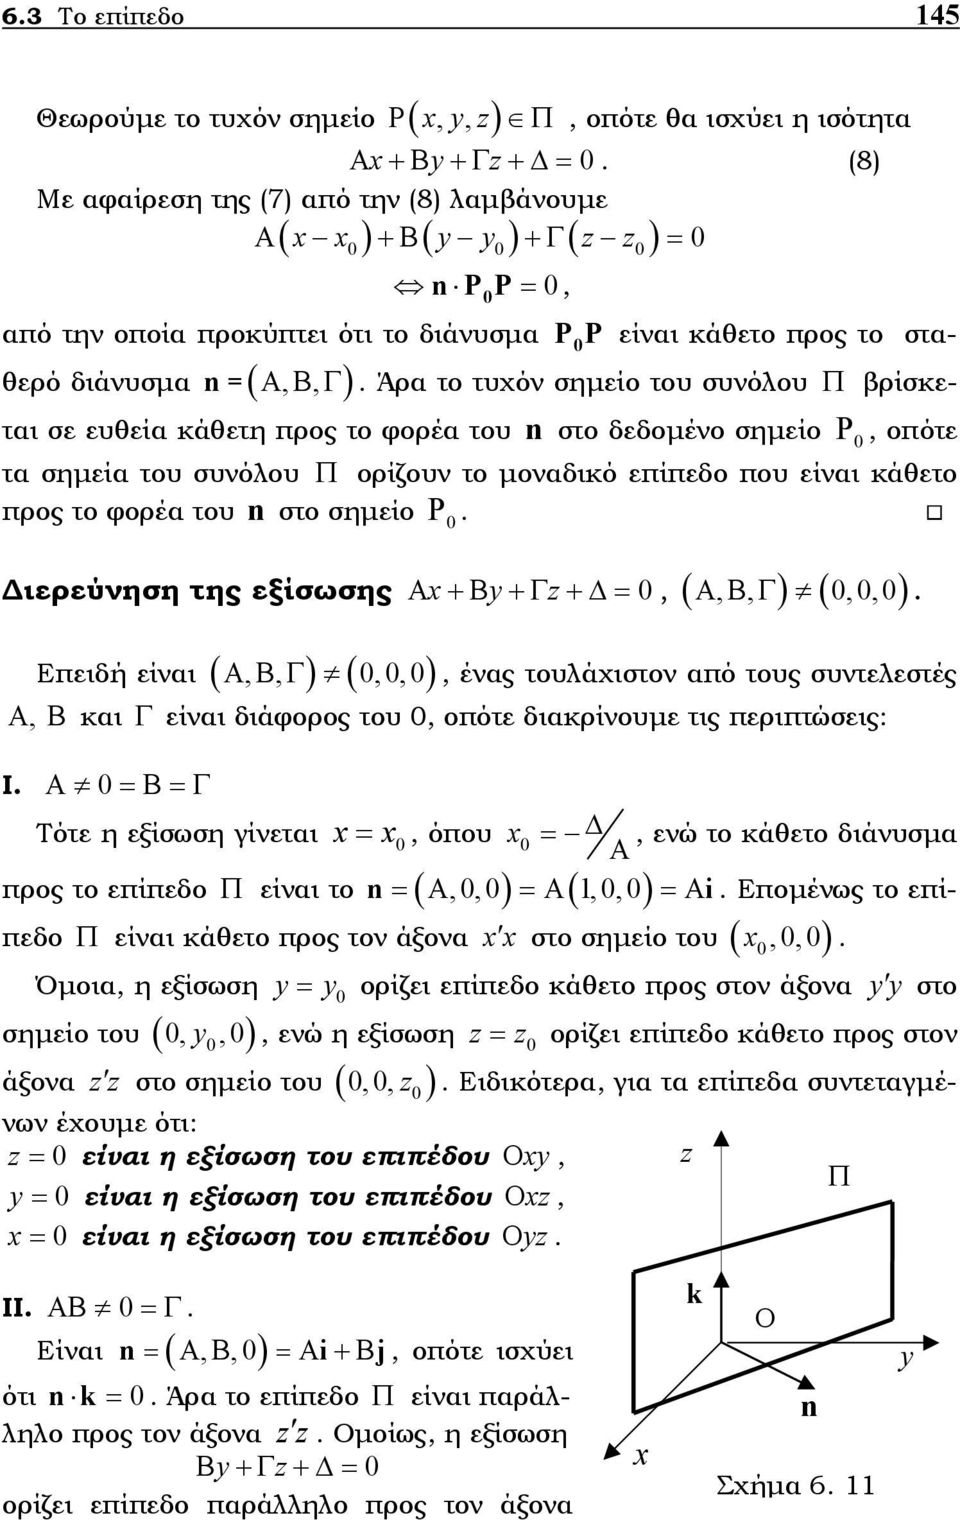 συνόλου Π ορίζουν το µοναδικό επίπεδο που είναι κάθετο προς το φορέα του στο σηµείο Ρ n ιερεύνηση της εξίσωσης x y z Α +Β +Γ + =, (,, ) (,,) ΑΒΓ Επειδή είναι ( ΑΒΓ,, ) (,,), ένας τουλάχιστον από τους